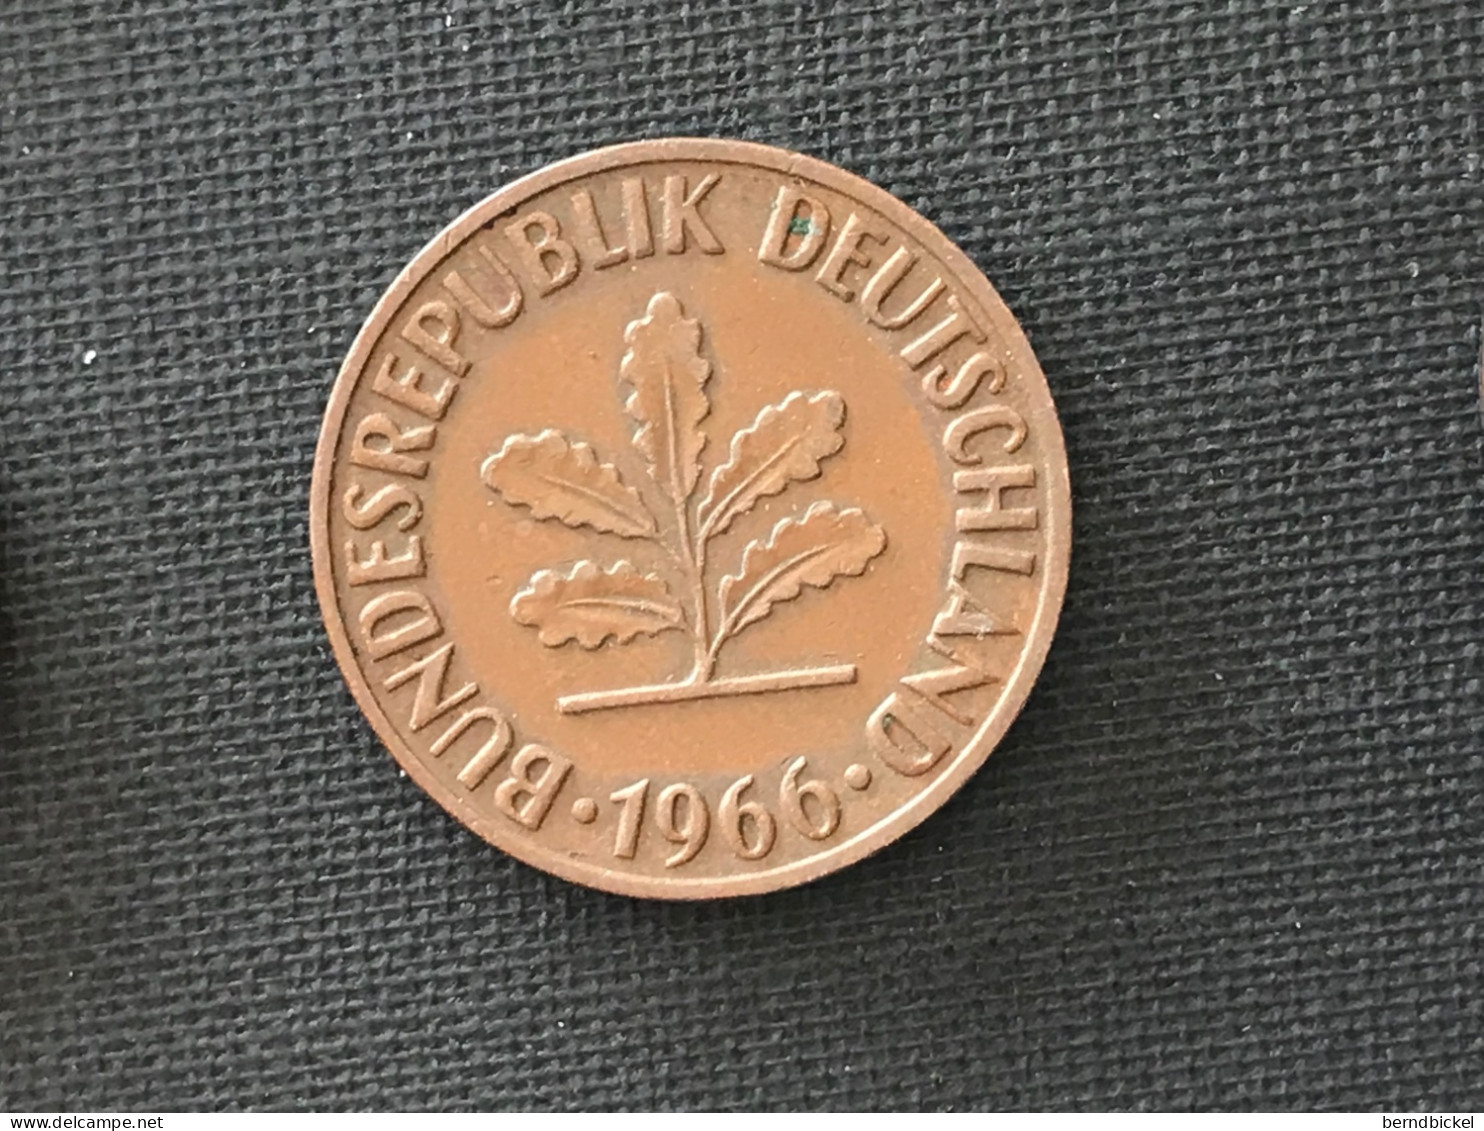 Münze Münzen Umlaufmünze Deutschland BRD 2 Pfennig 1966 Münzzeichen J - 2 Pfennig